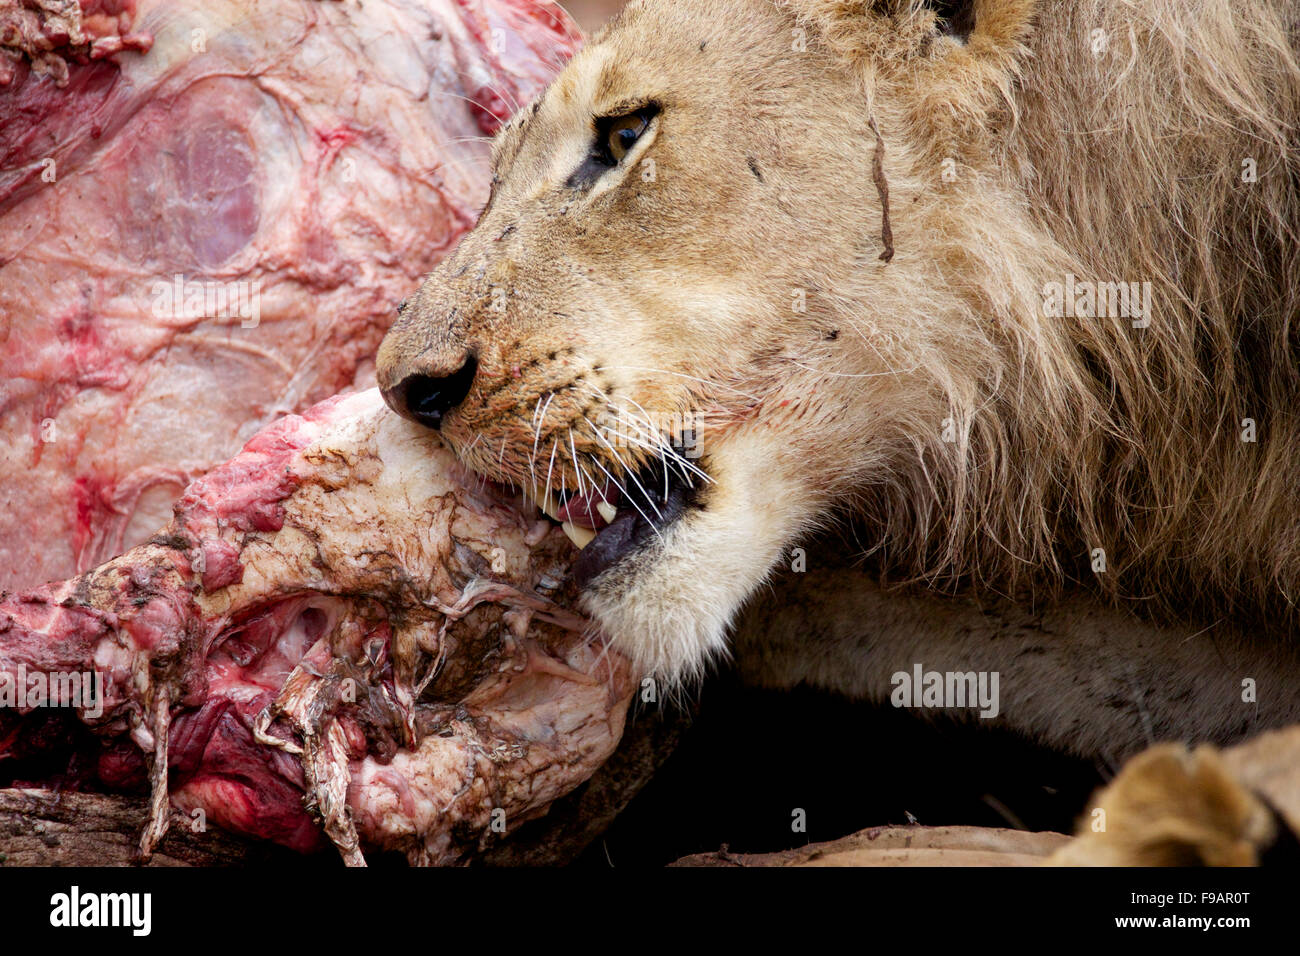 Un giovane maschio lion taglio attraverso la carne dalla carcassa di un bufalo al grande parco nazionale Kruger in Sud Africa. Foto Stock